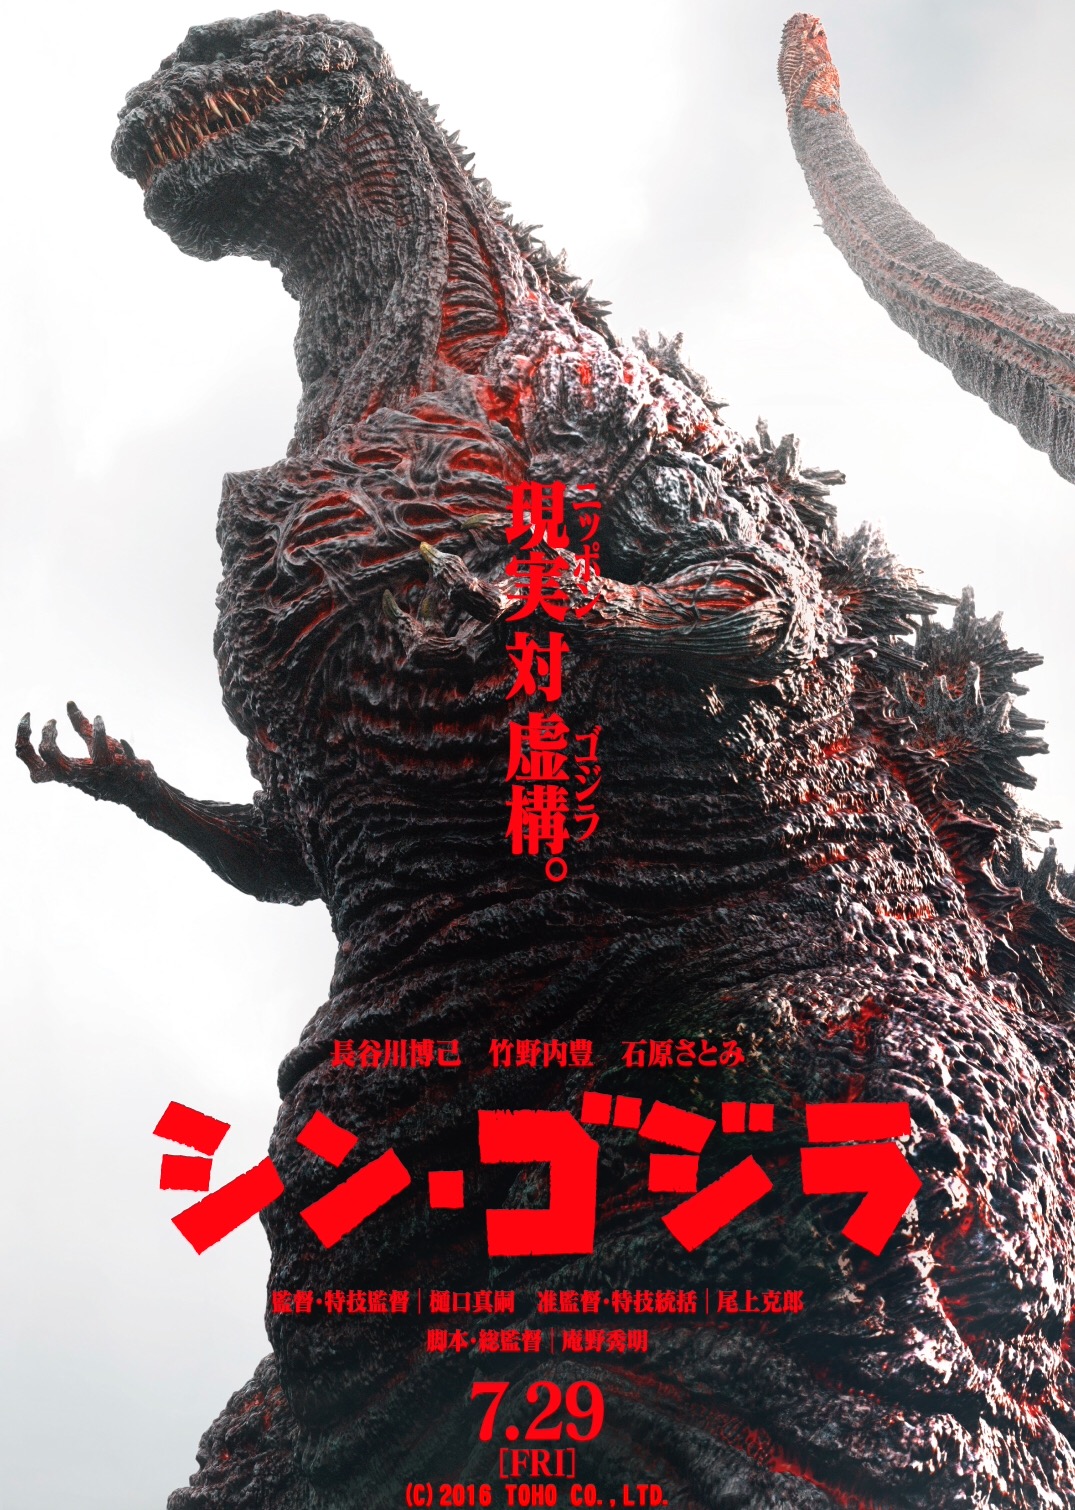 ดูหนังออนไลน์ Shin Godzilla (2016) ก็อดซิลล่า รีเซอร์เจนซ์